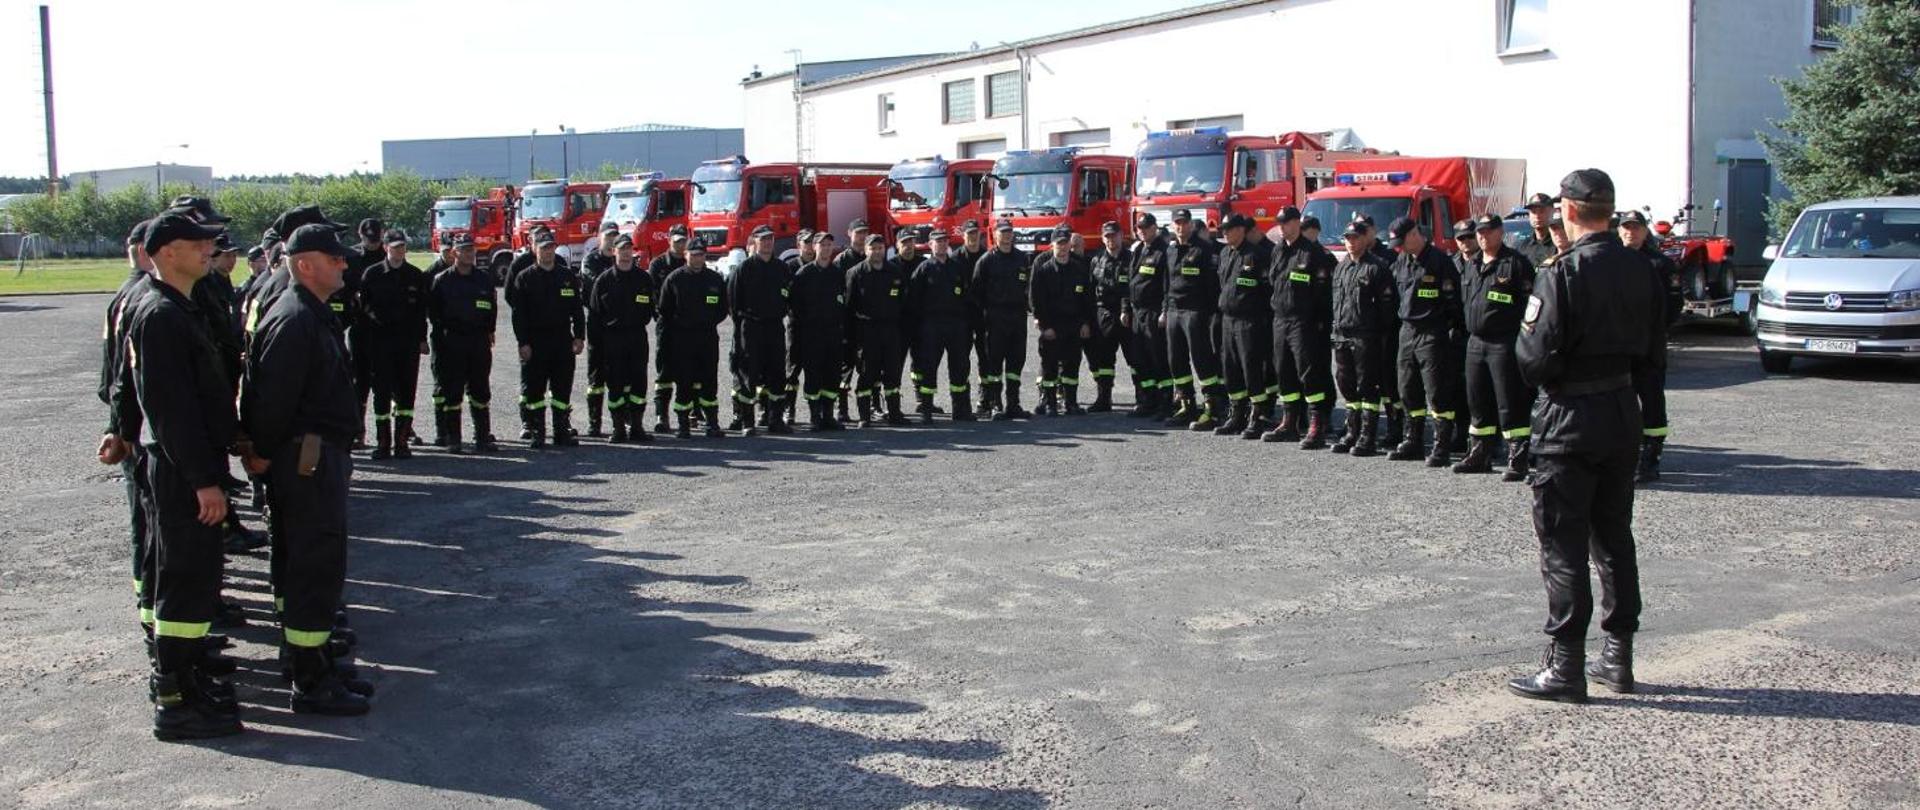 Na zdjęciu stoi grupa około 50 strażaków podczas odprawy. w tle samochody pożarnicze.